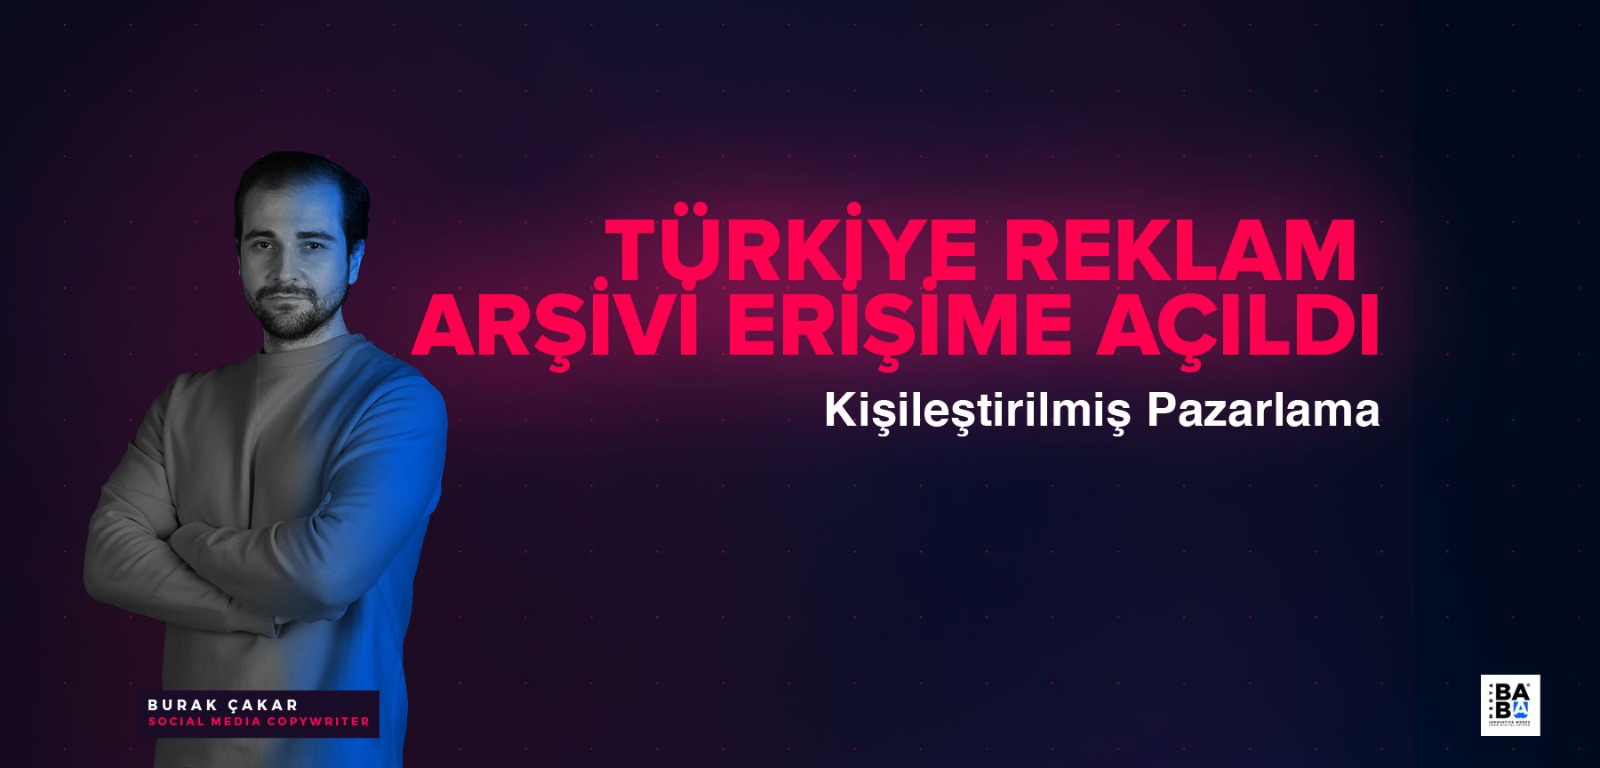 Türkiye Reklam Arşivi Erişime Açıldı